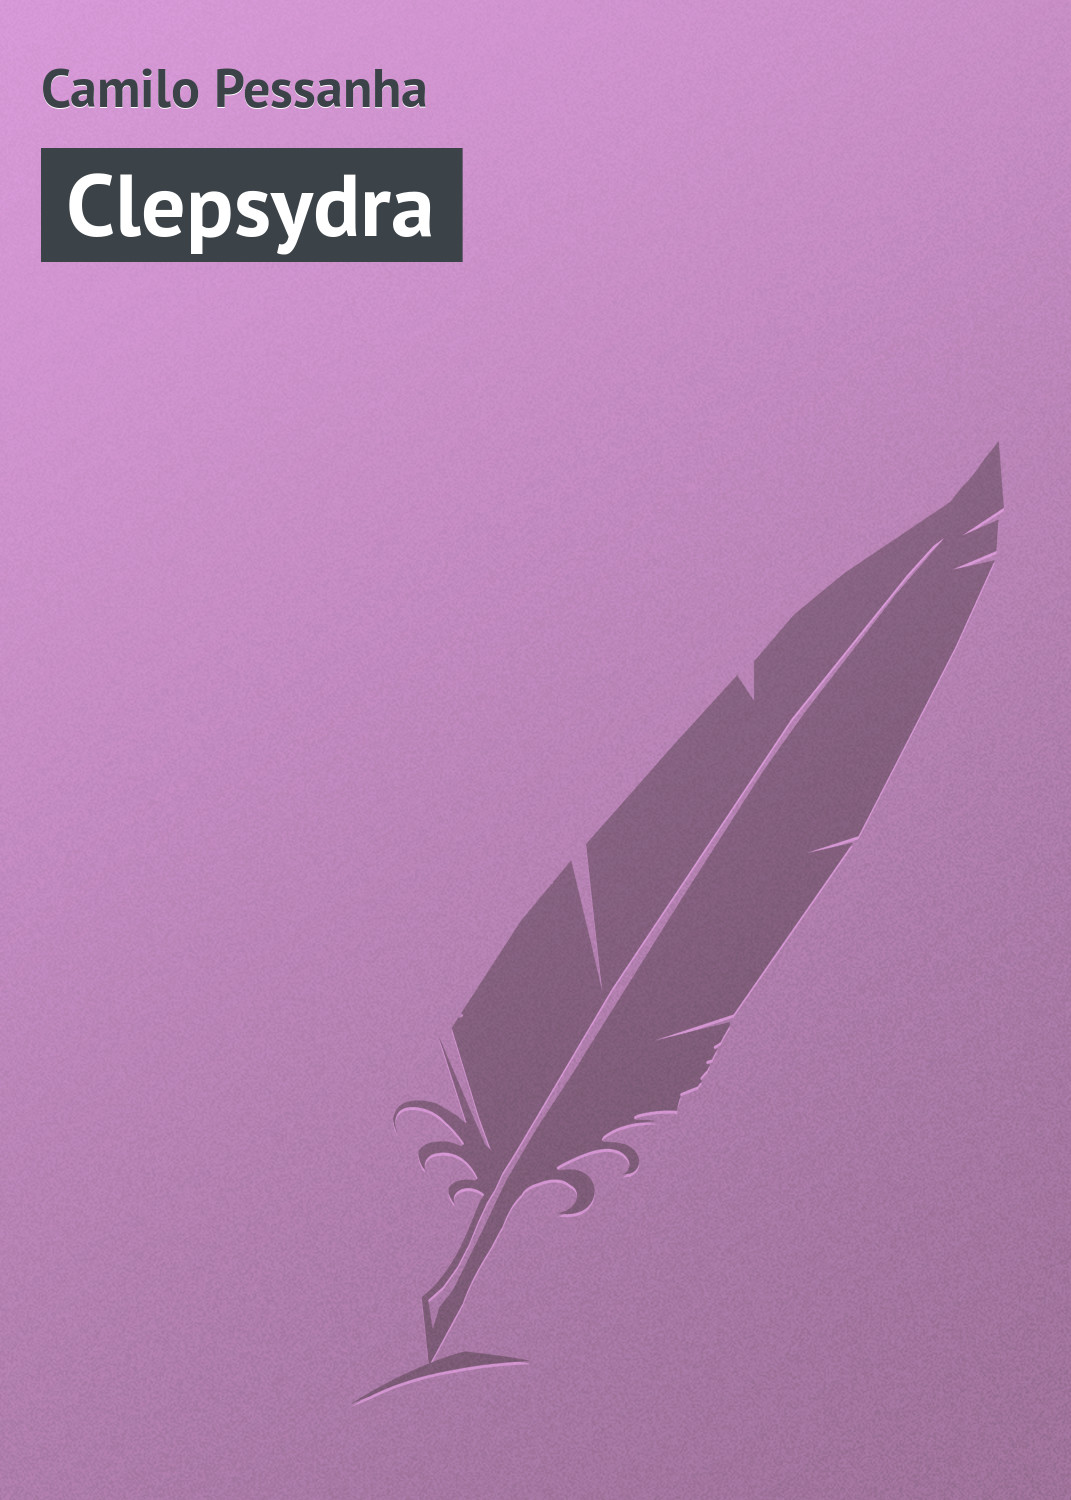 Книга Clepsydra из серии , созданная Camilo Pessanha, может относится к жанру Зарубежная старинная литература, Зарубежная классика. Стоимость электронной книги Clepsydra с идентификатором 21096942 составляет 5.99 руб.